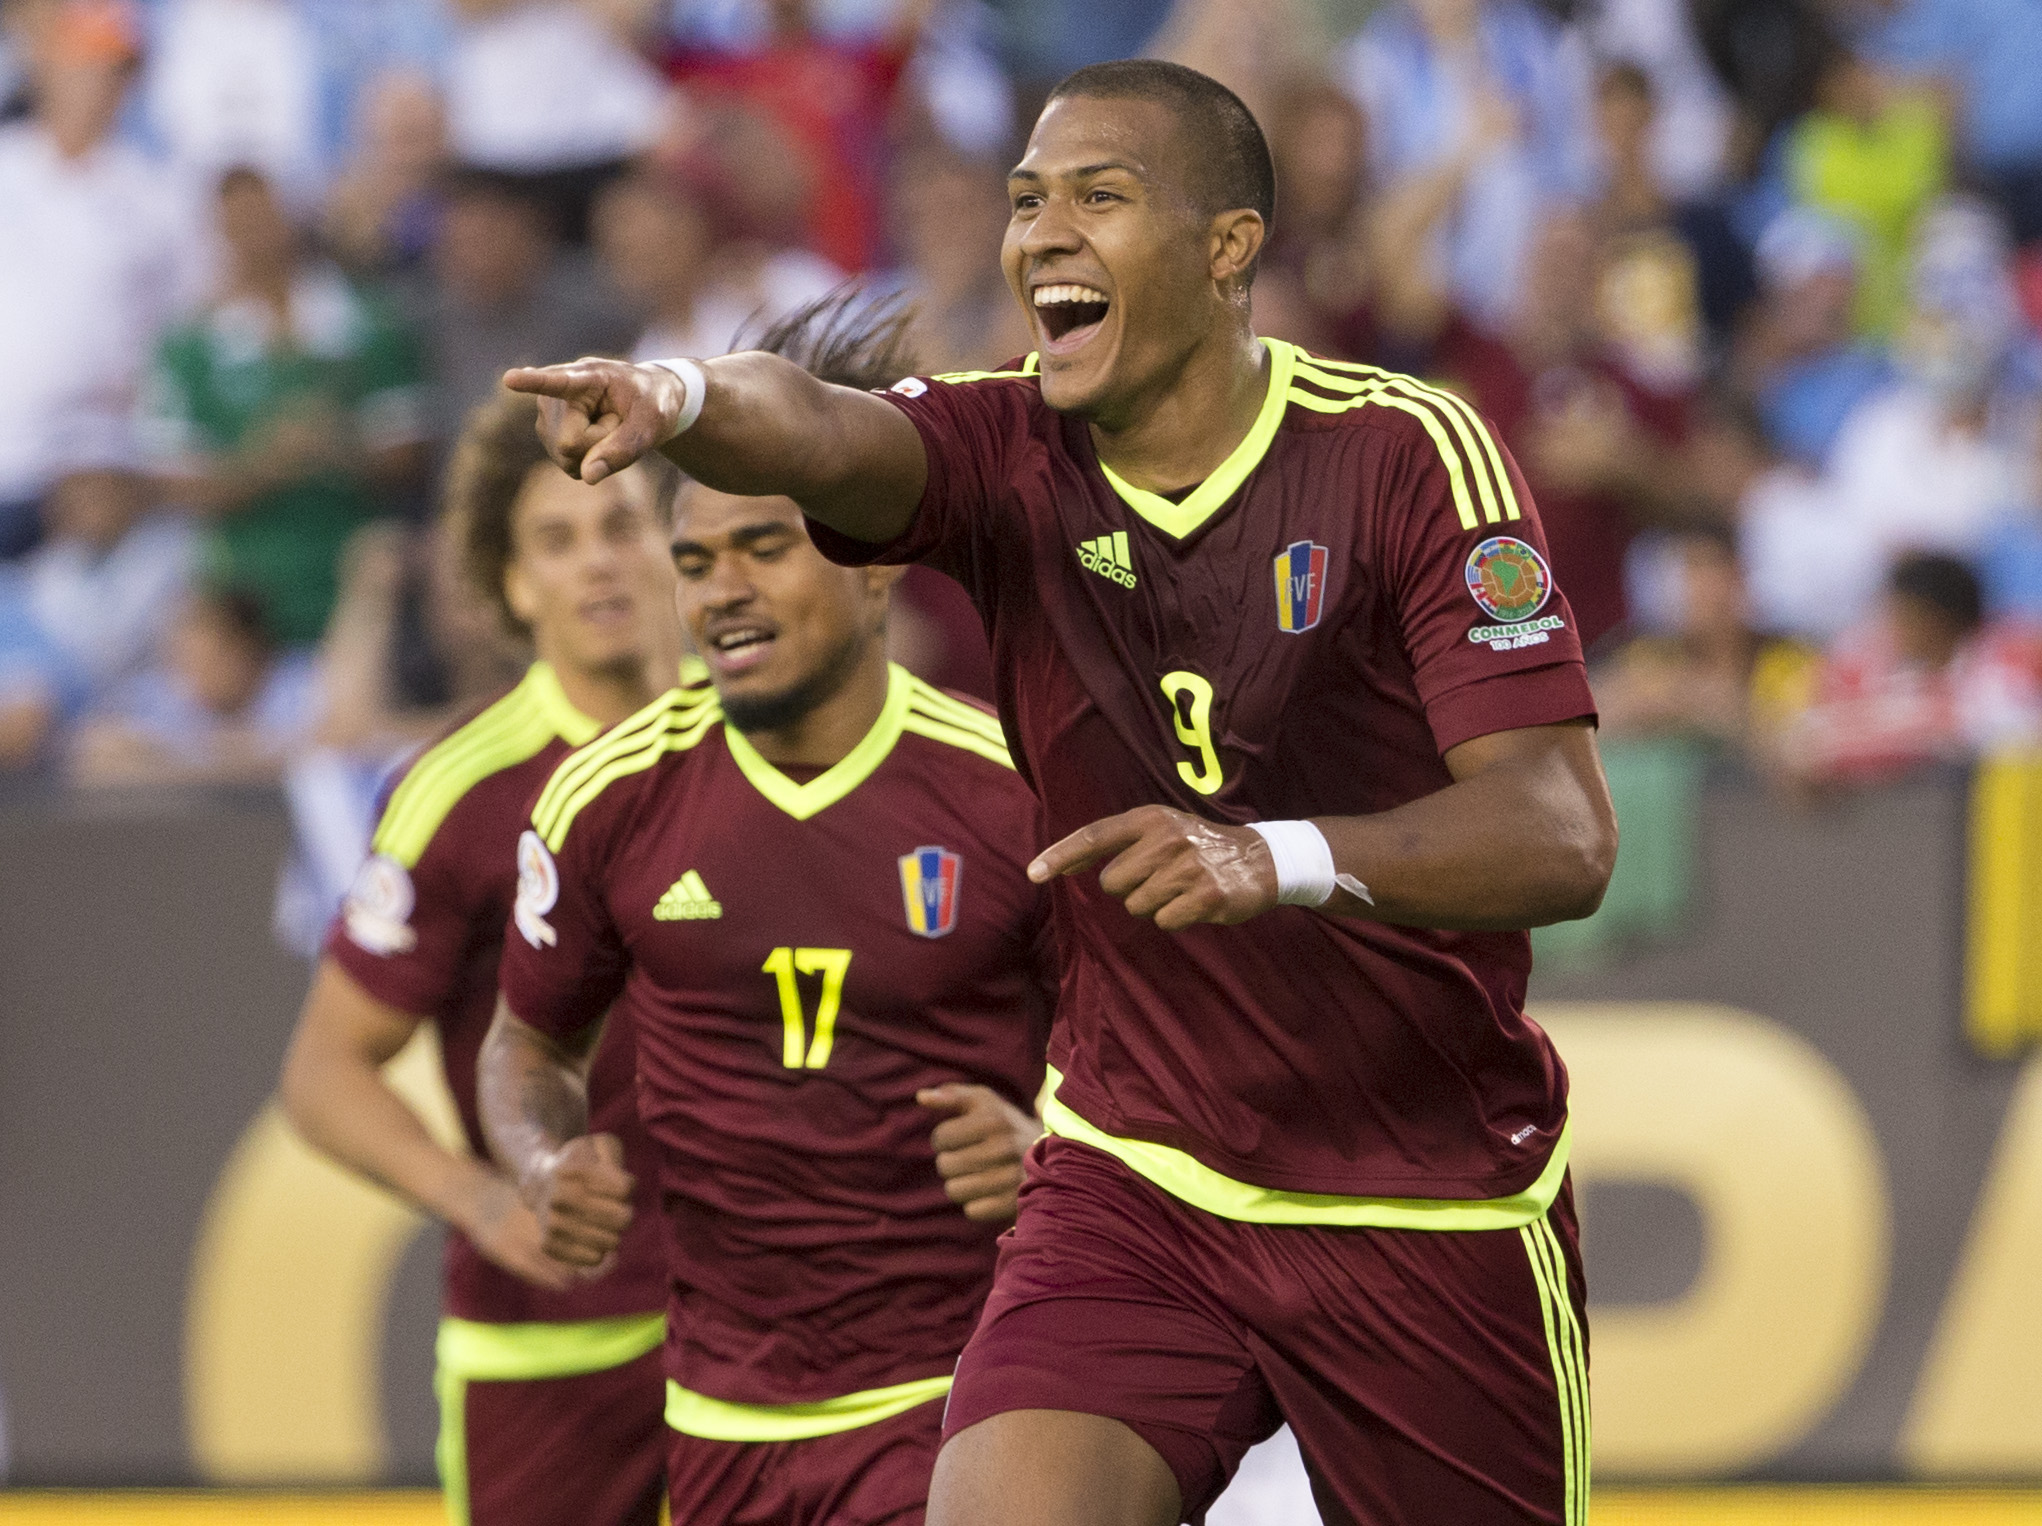 Mexico-Venezuela, copa america, score, results, highlights, 2016, who won match, Mexico-Venezuela score, Mexico-Venezuela partido, Mexico-Venezuela highlights